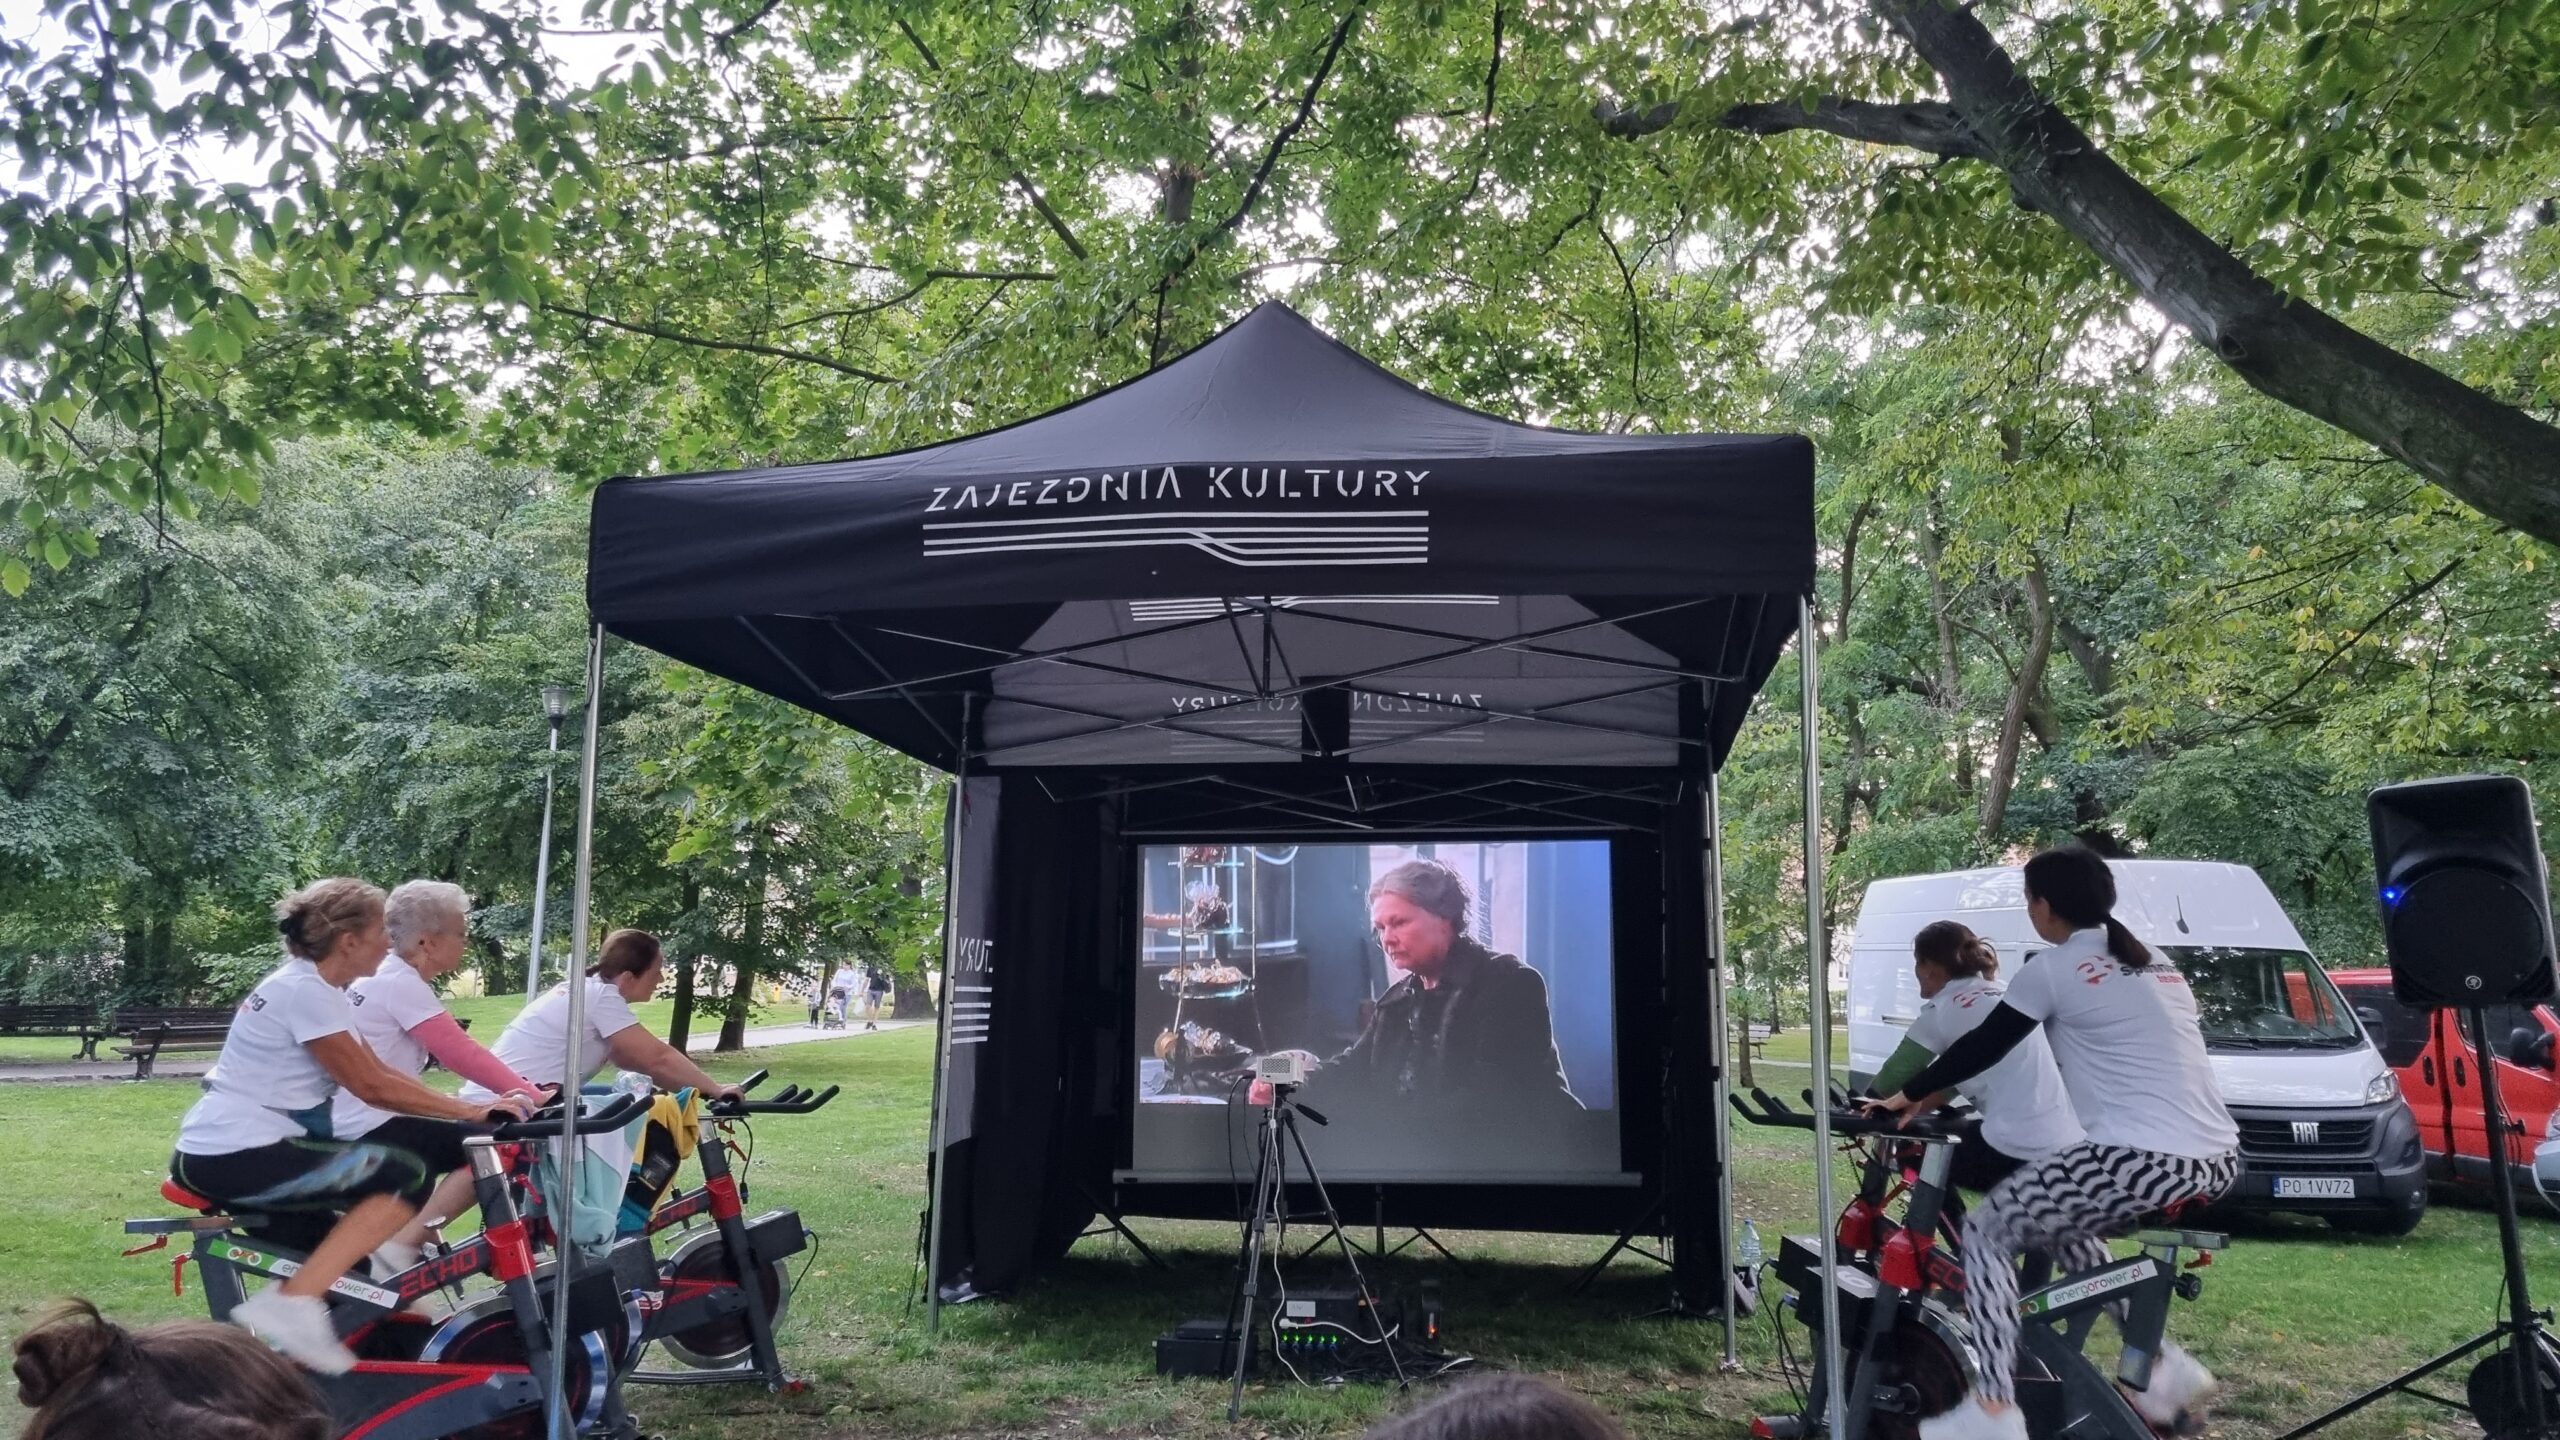 plenerowe kino - w tle ekrankinowy i ludzie jadący na rowerach stacjonarnych napędzających ekran